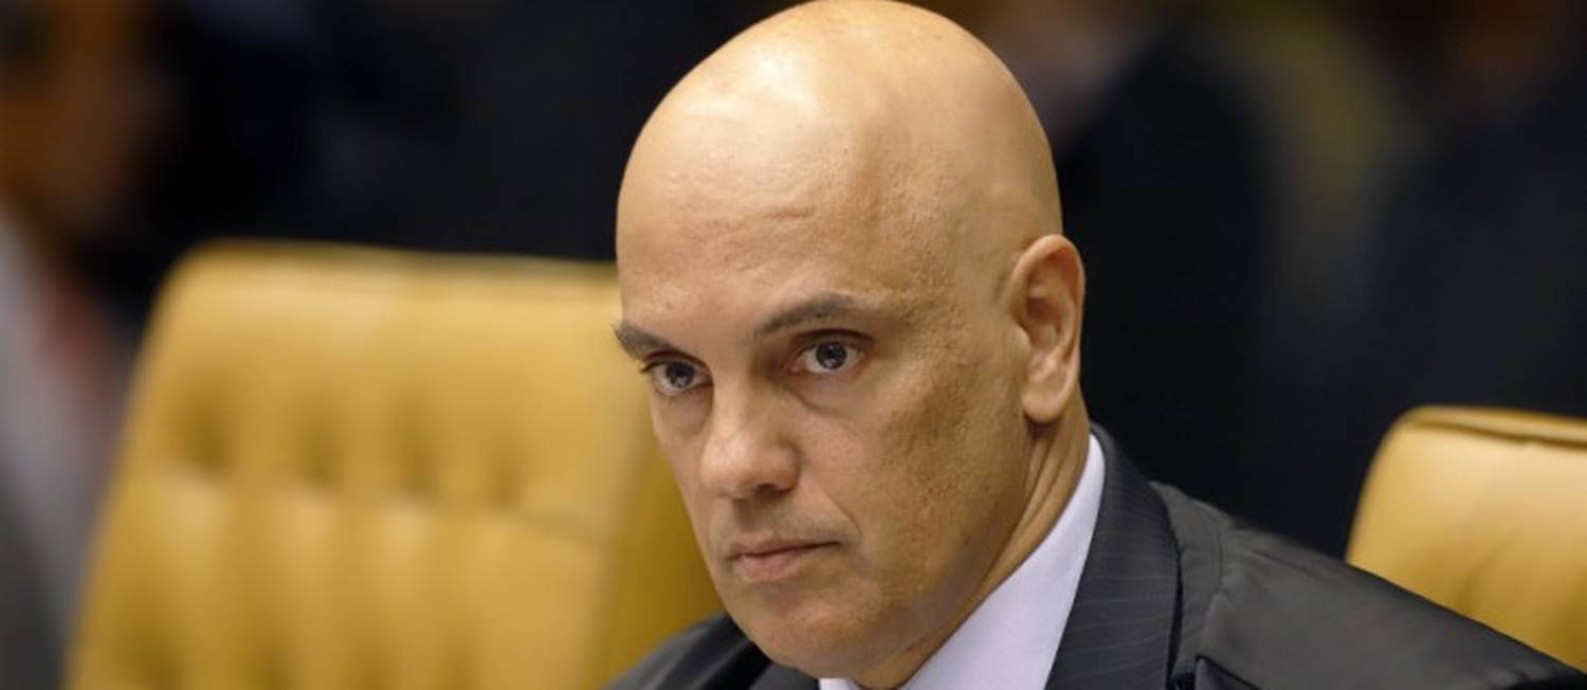 O ministro do Supremo Tribunal Federal Alexandre de Moraes Foto: Nelson Jr. / SCO / STF / 09/09/2020